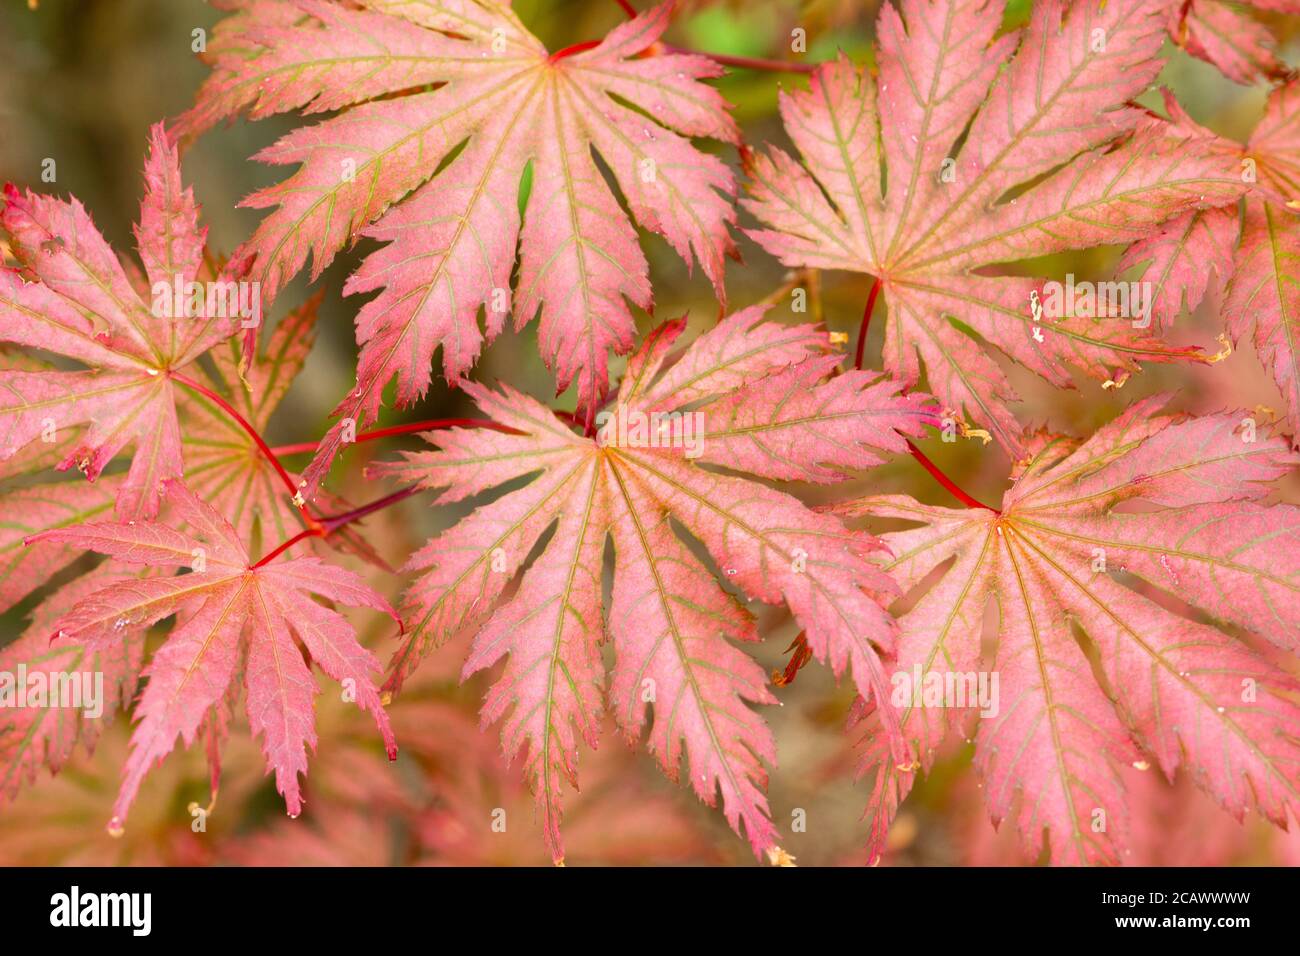 Nahaufnahme des sommerlichen Laubs des ornamentl japanischen Ahorns, Acer palmatum 'Ariadne' Stockfoto